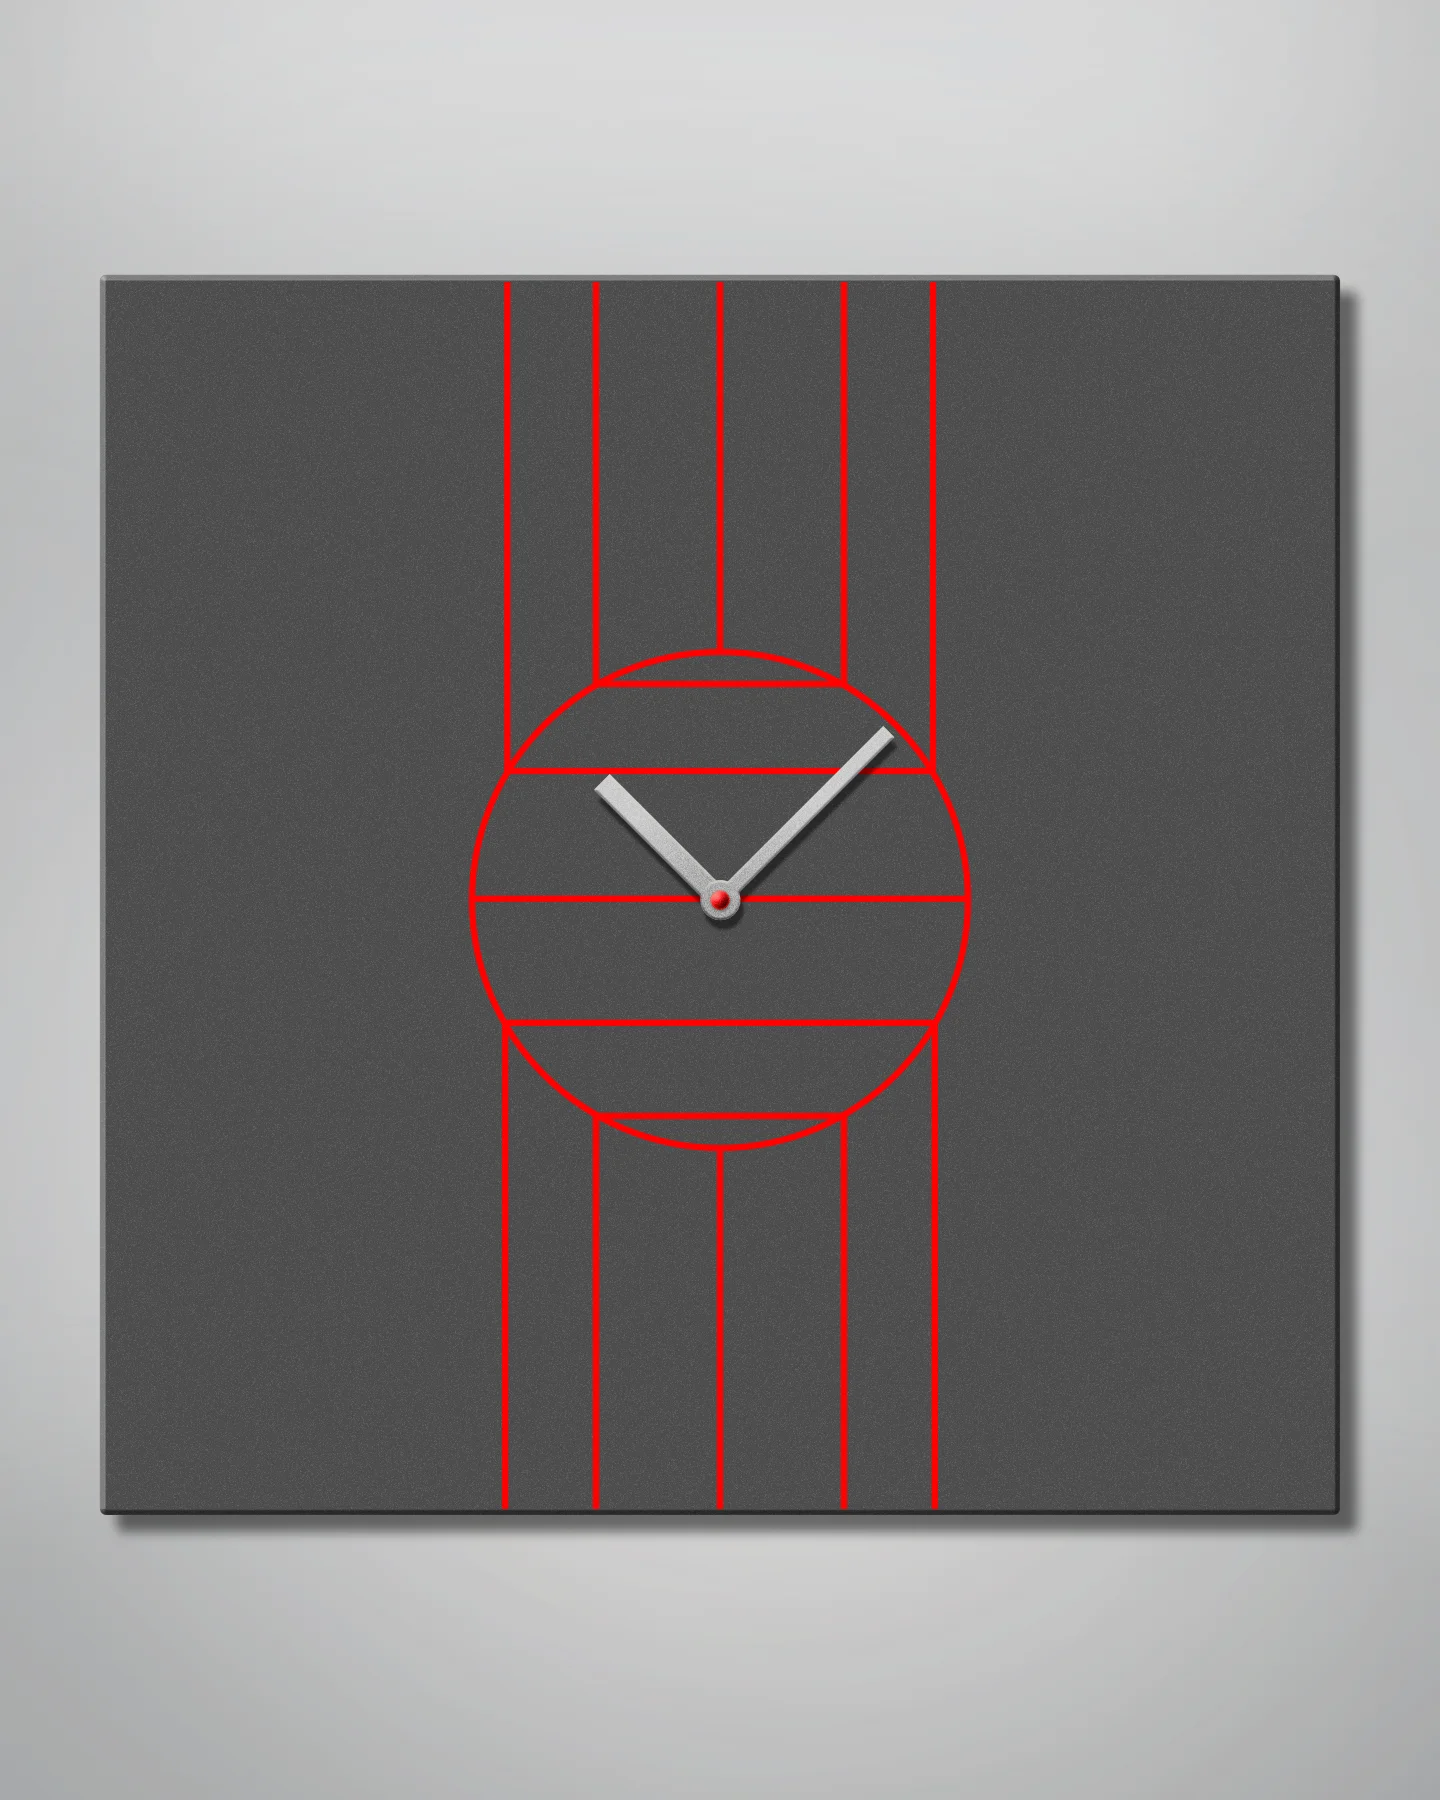 TT wall clock, Martin Kania Design